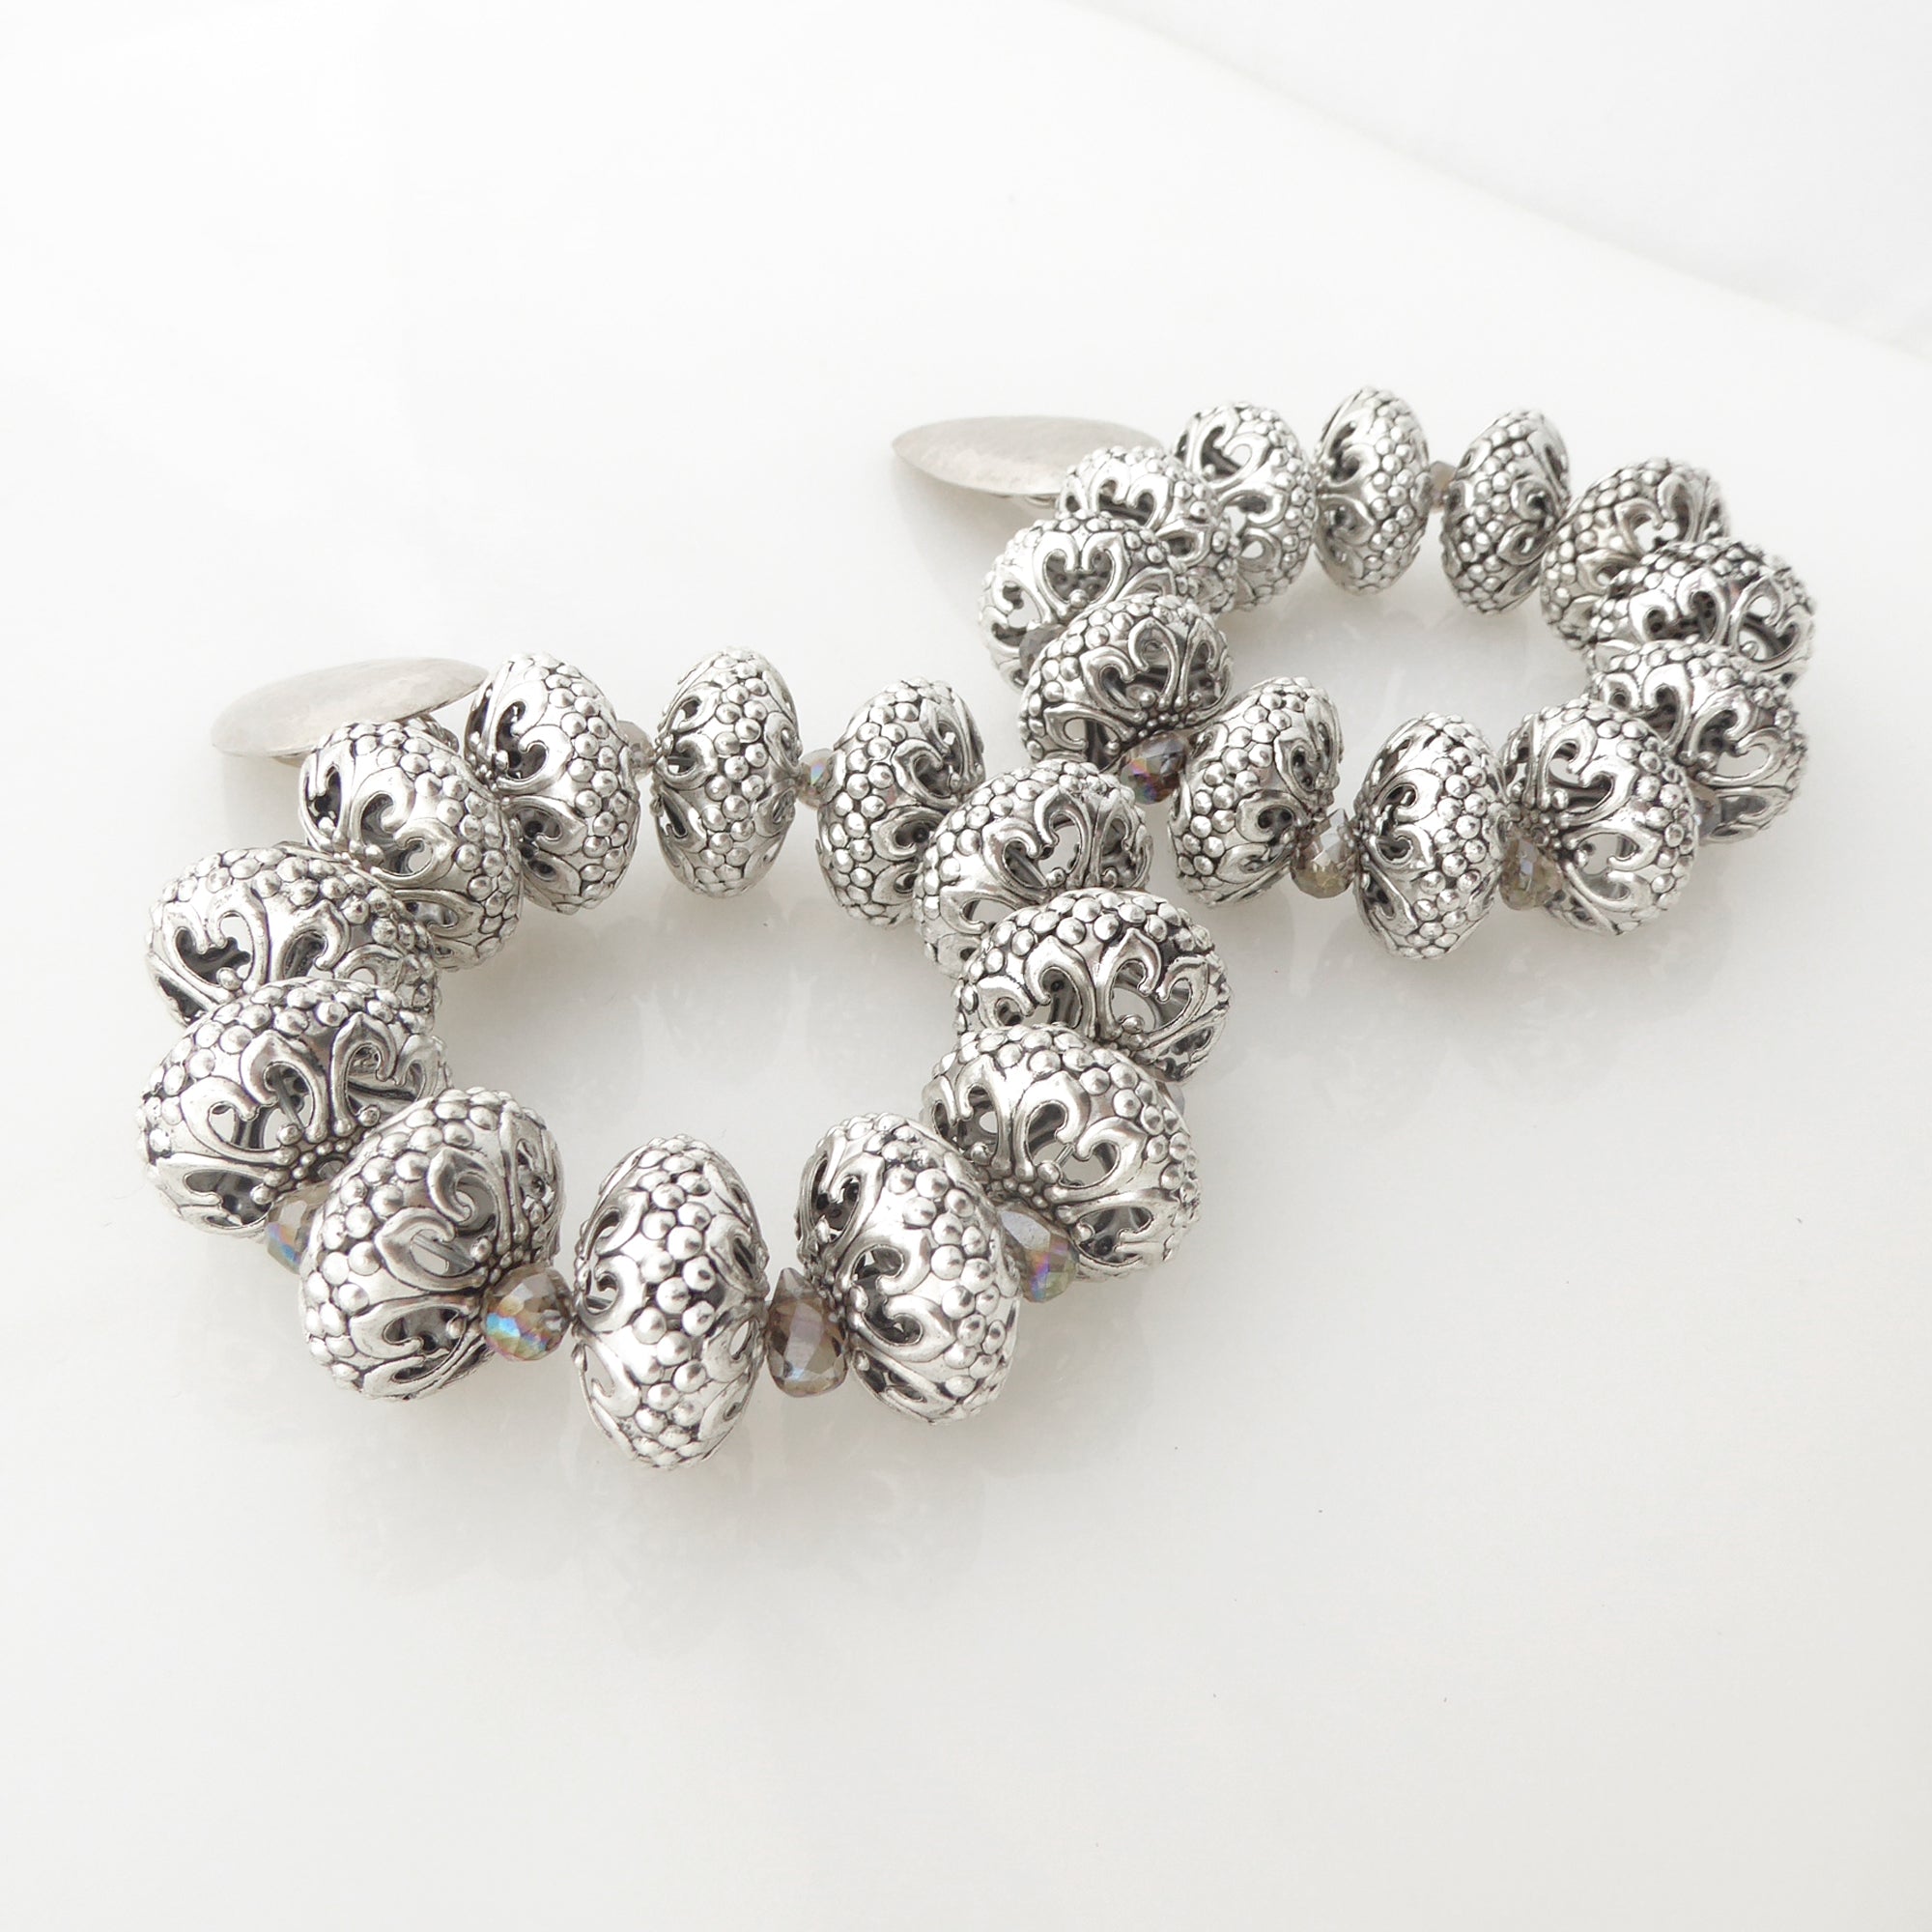 Silver elder earrings by Jenny Dayco 2